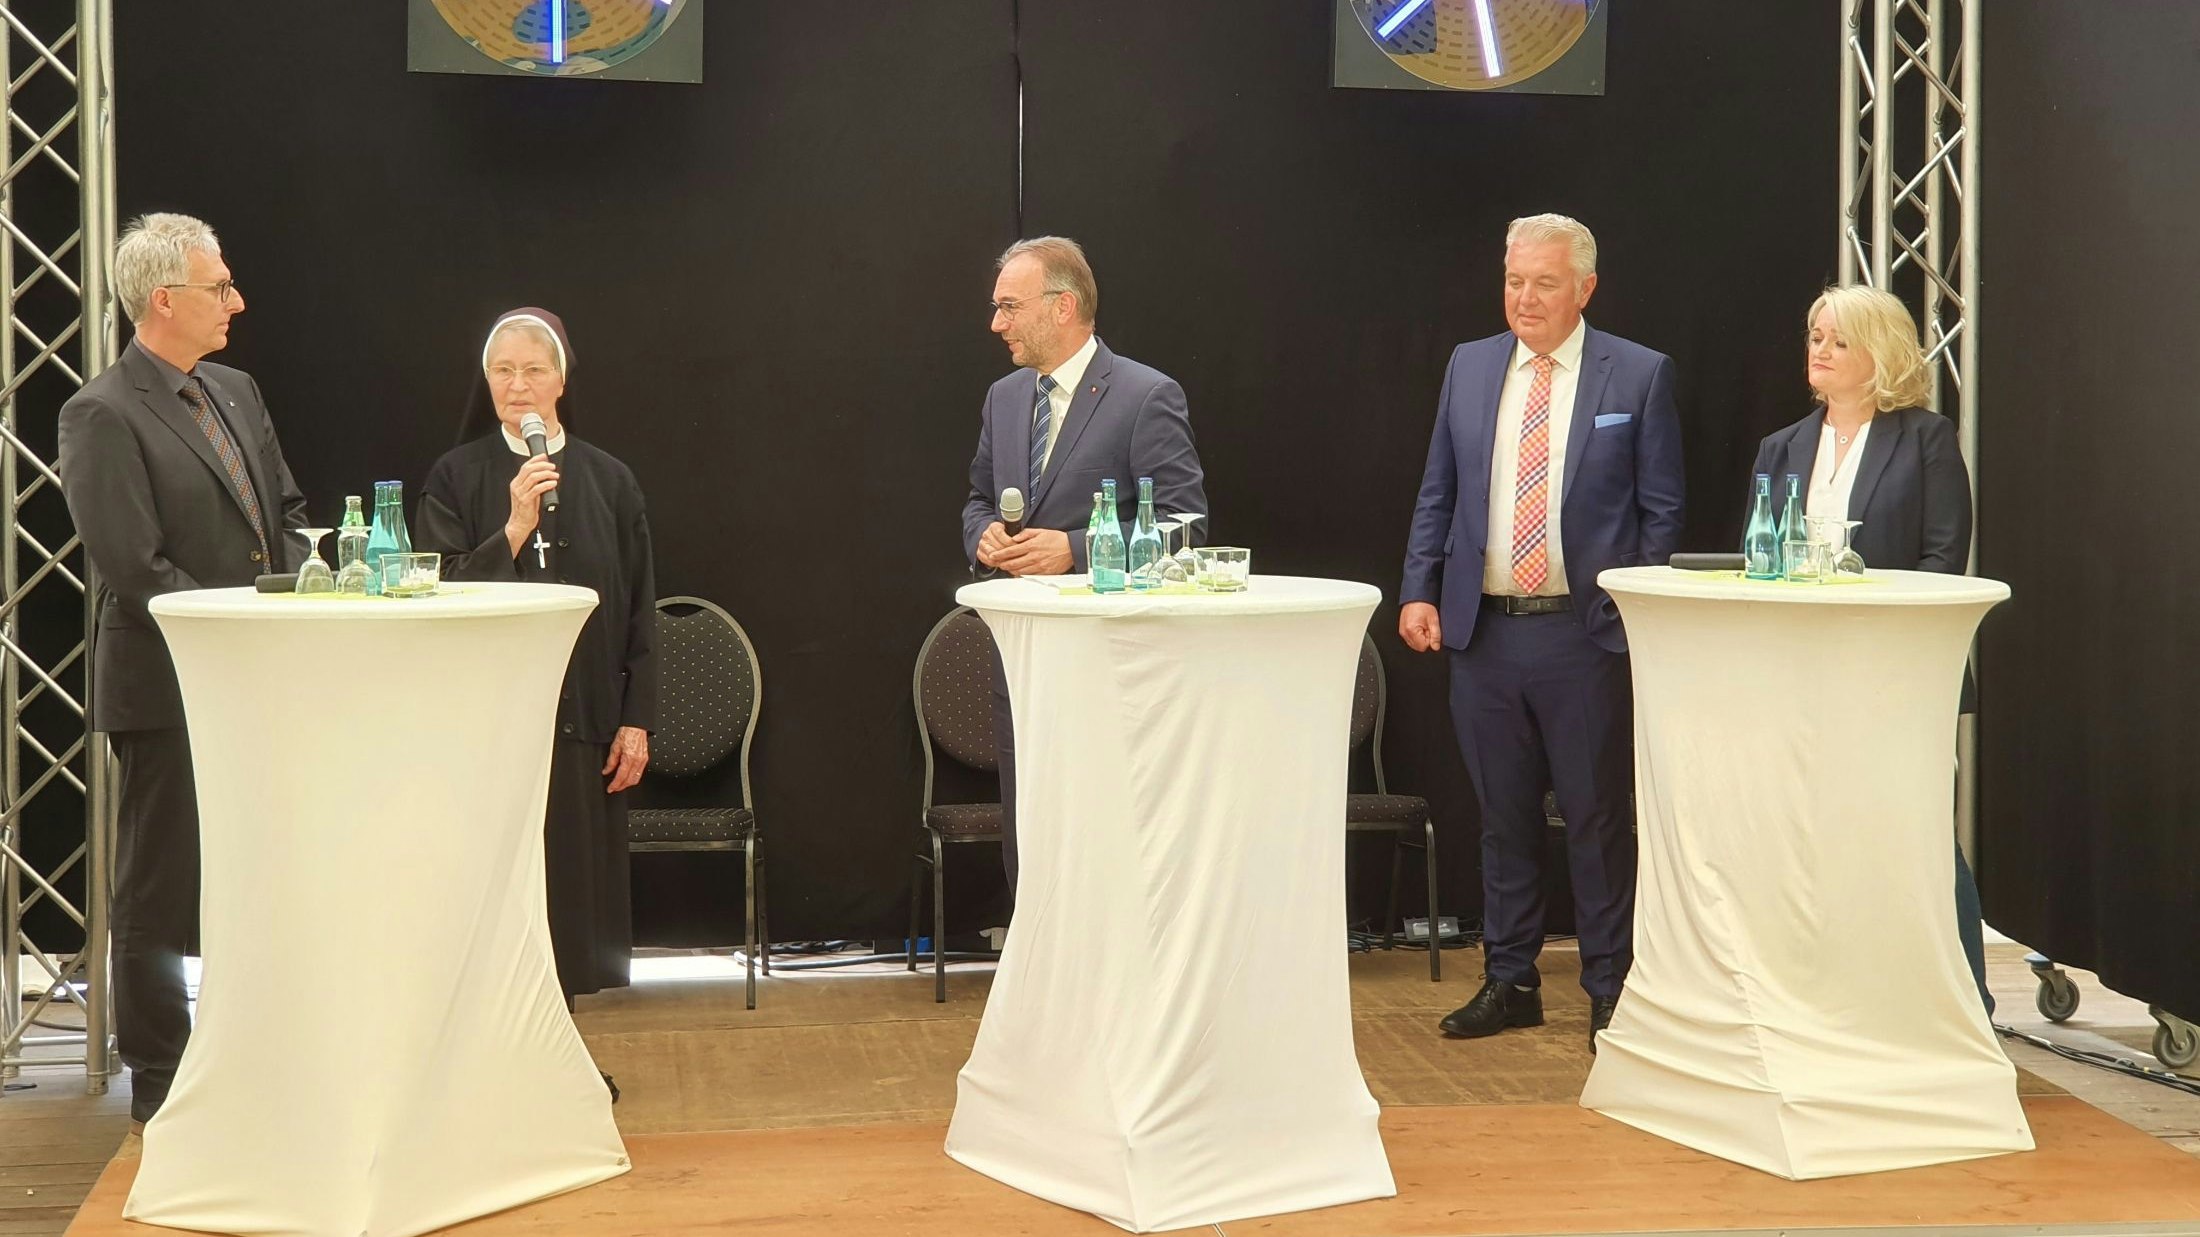 Auf dem Podium: (von links) Peter Schulze, Sr. Reginata, Dr. Martin Pohlmann, Christoph Eilers und Ramona Hüwelhans. Foto: Kessens